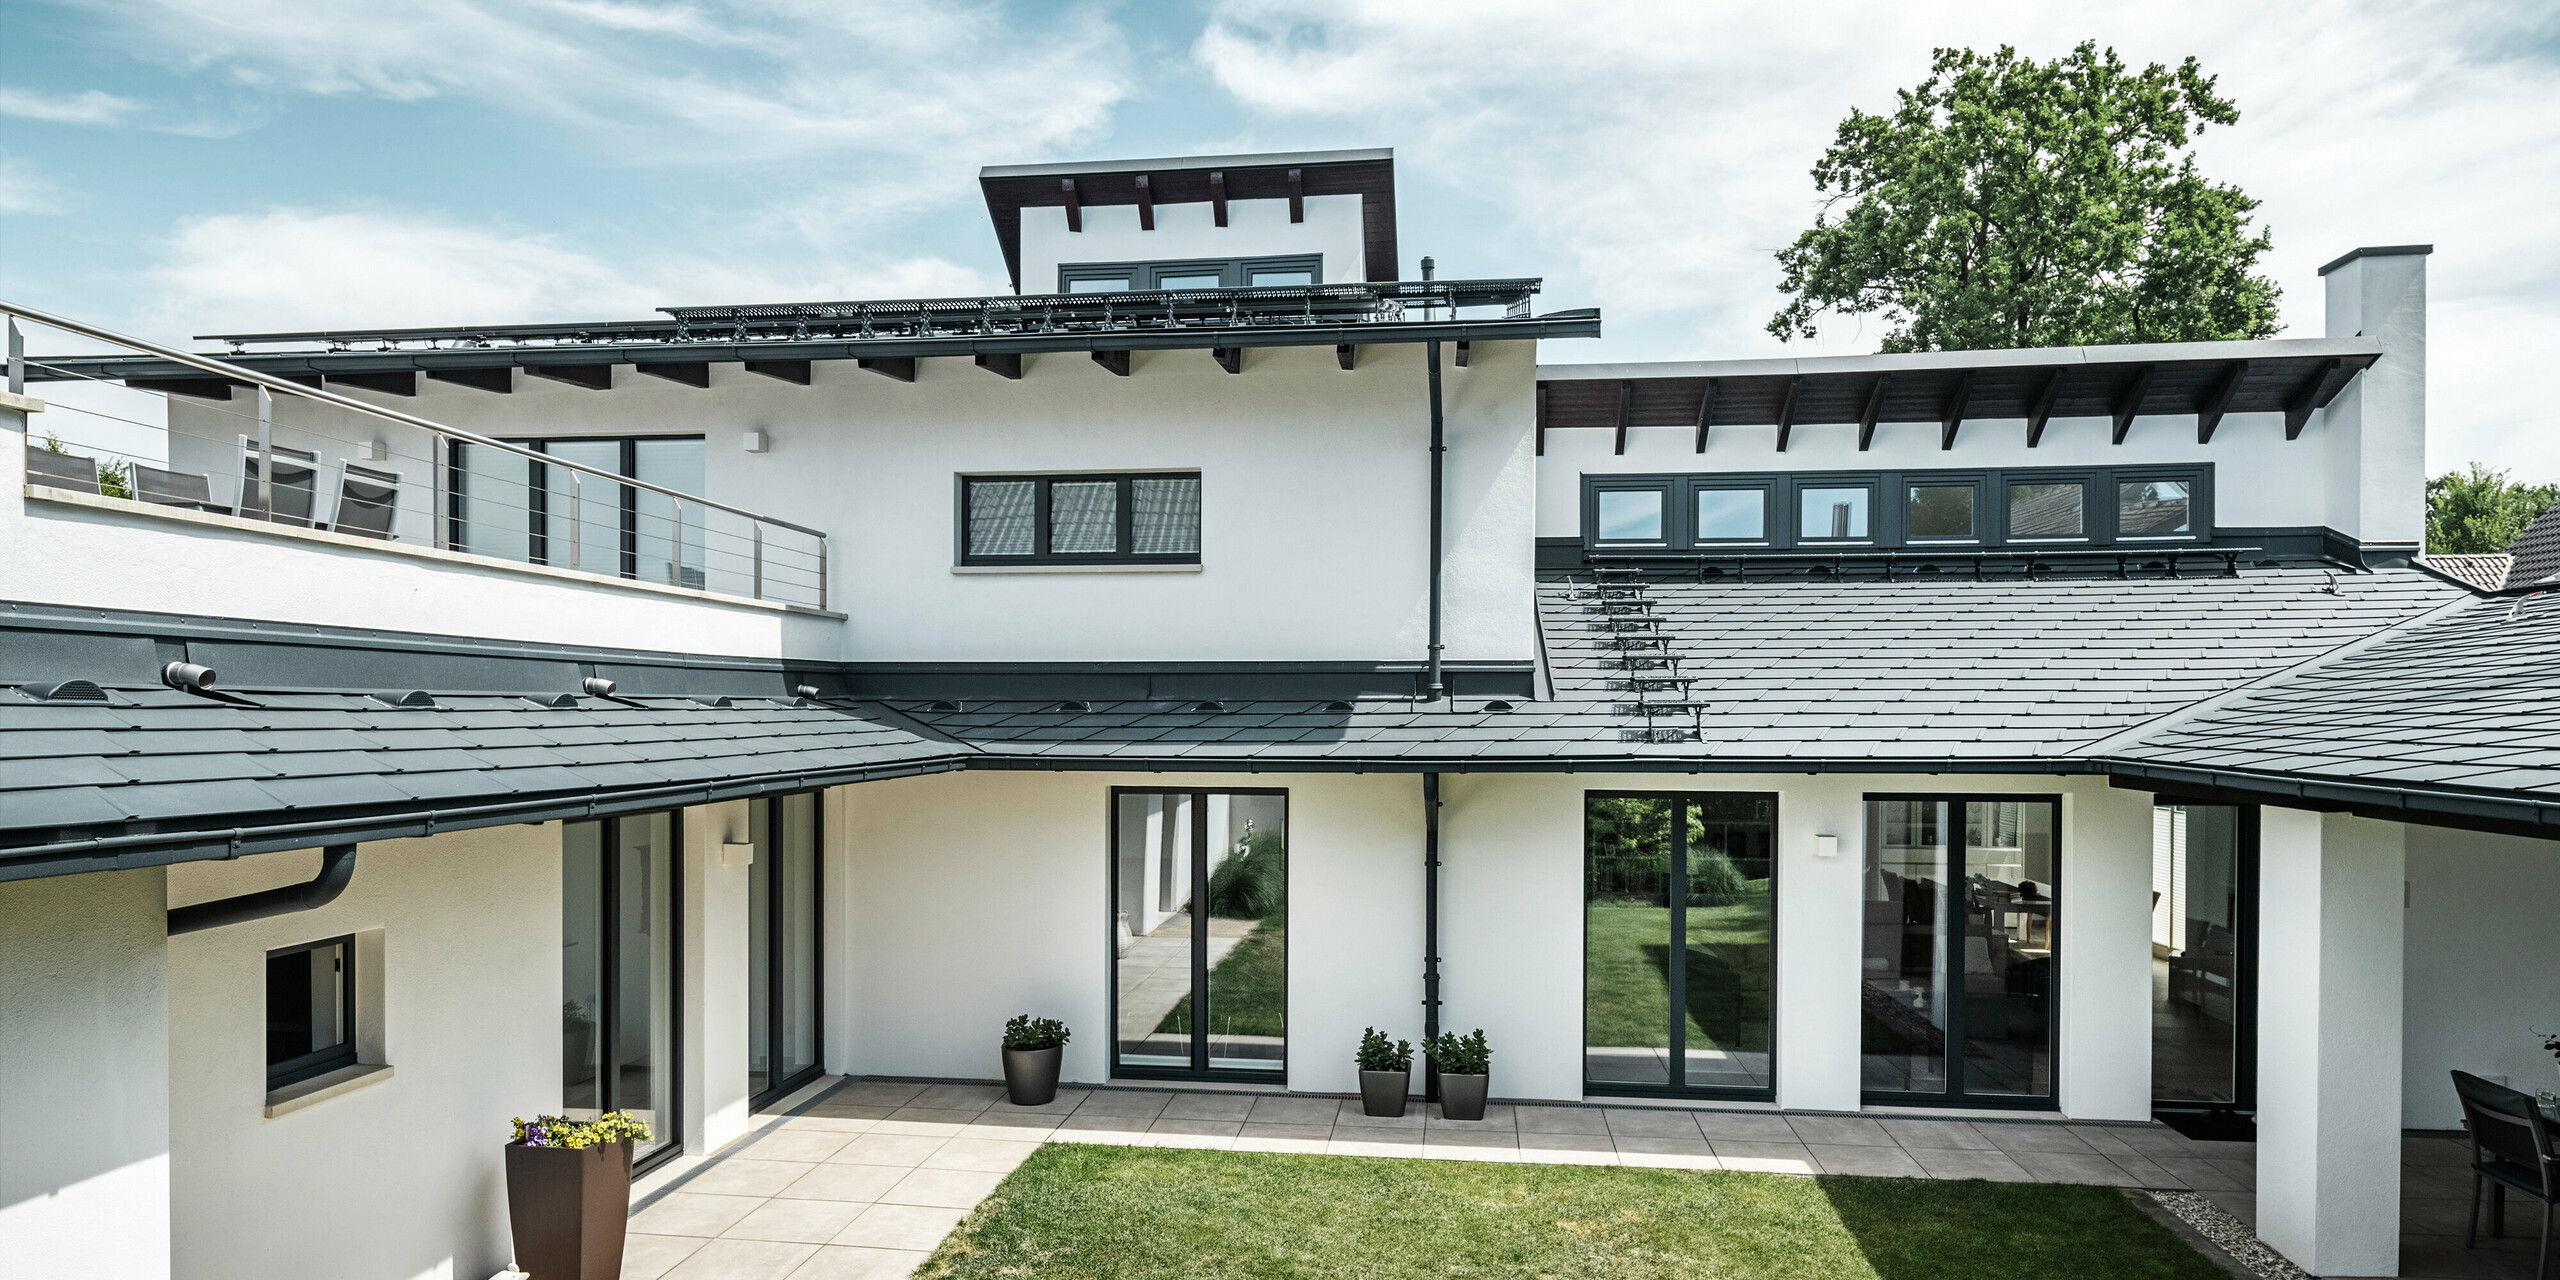 Zu sehen ist der Innenhof eines Einfamilienhauses in Dortmund, welches mit PREFA Dachschindeln DS.19 und PREFALZ in der Farbe P.10 Anthrazit eingedeckt wurde.